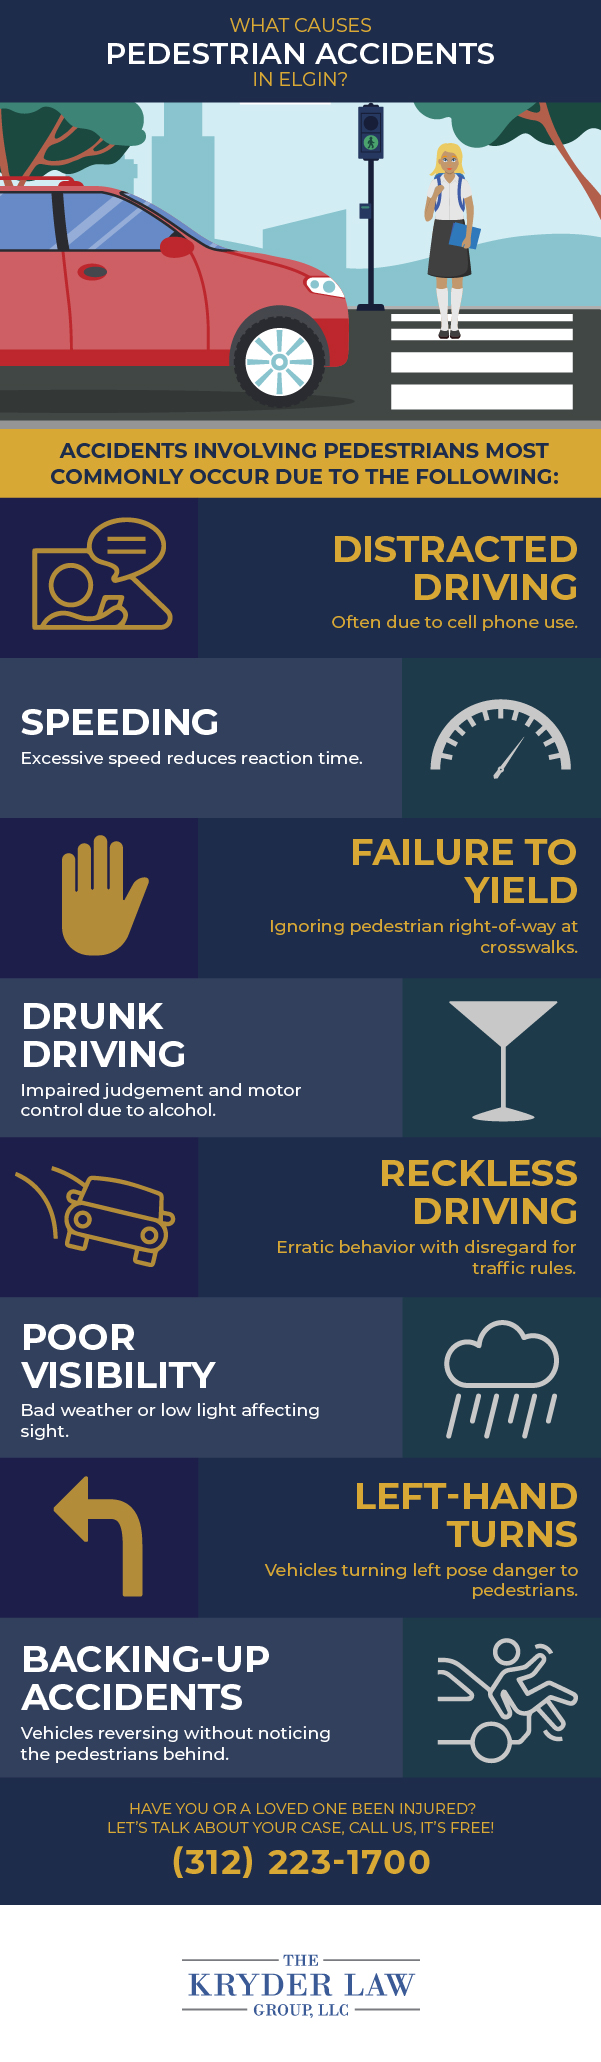 ¿Qué causa los accidentes de peatones en Elgin?